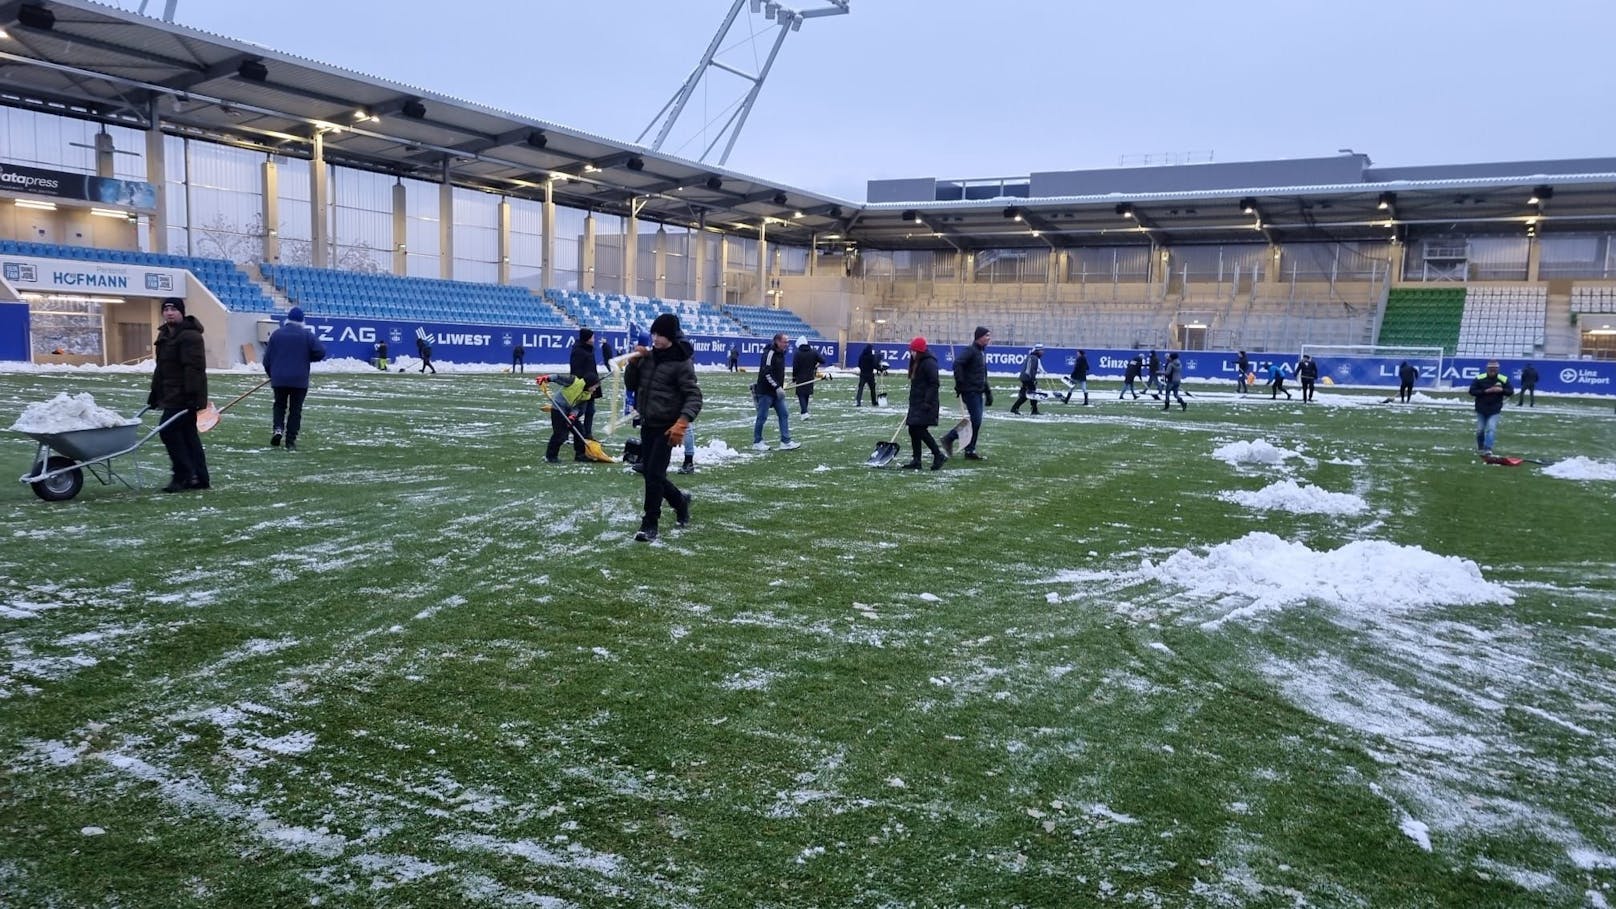 Doch der Linzer Klub bekam sportliche Unterstützung: Unzählige Fans schnappten sich eine Schaufel und räumten den Schnee weg.